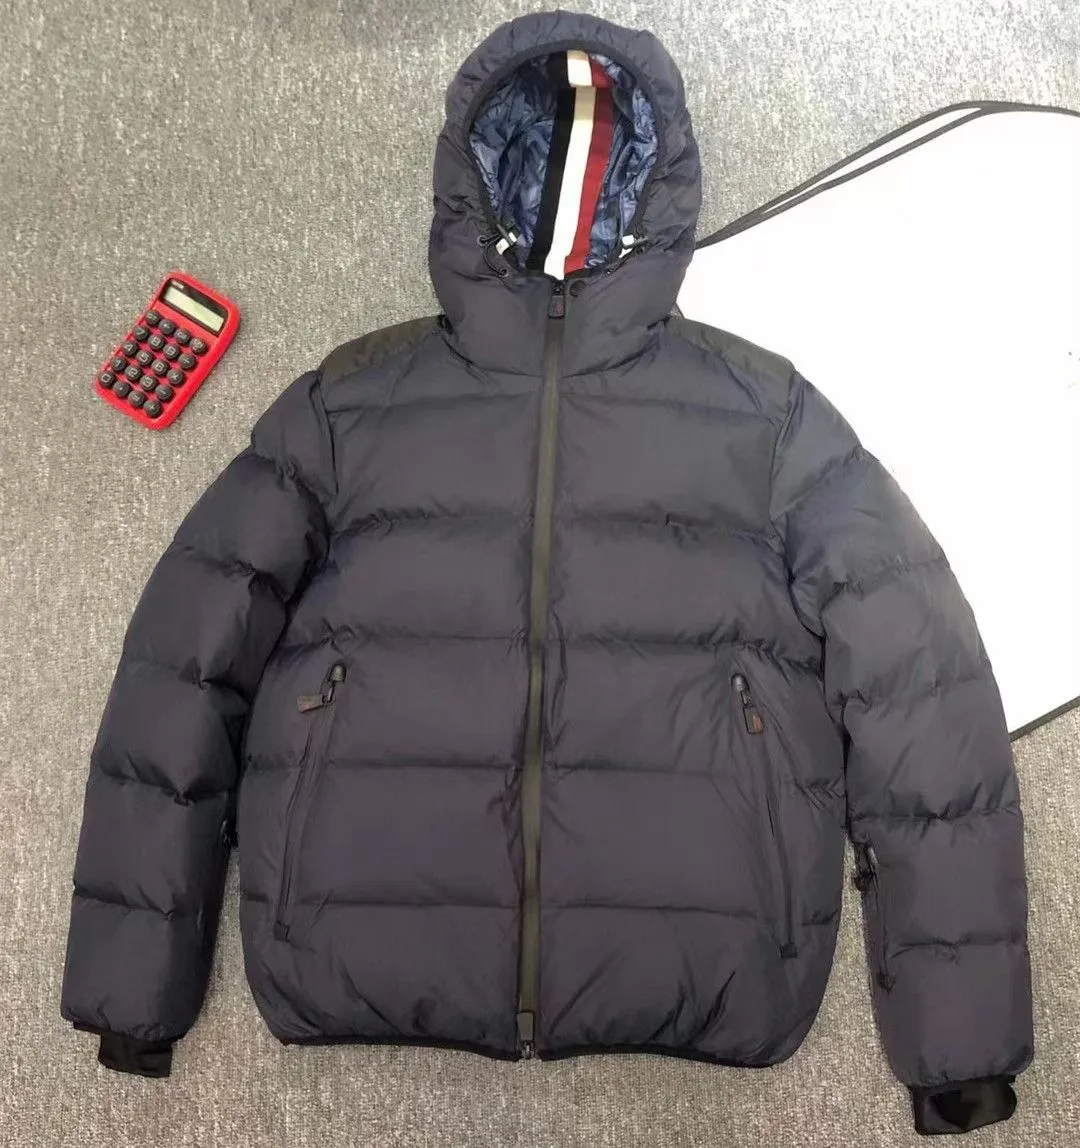 Men`s Down Parkas Ski Jacket for Men Black Winter Coat Hooded Designer Warm Pocket Parka Two-way Zipper A1hi